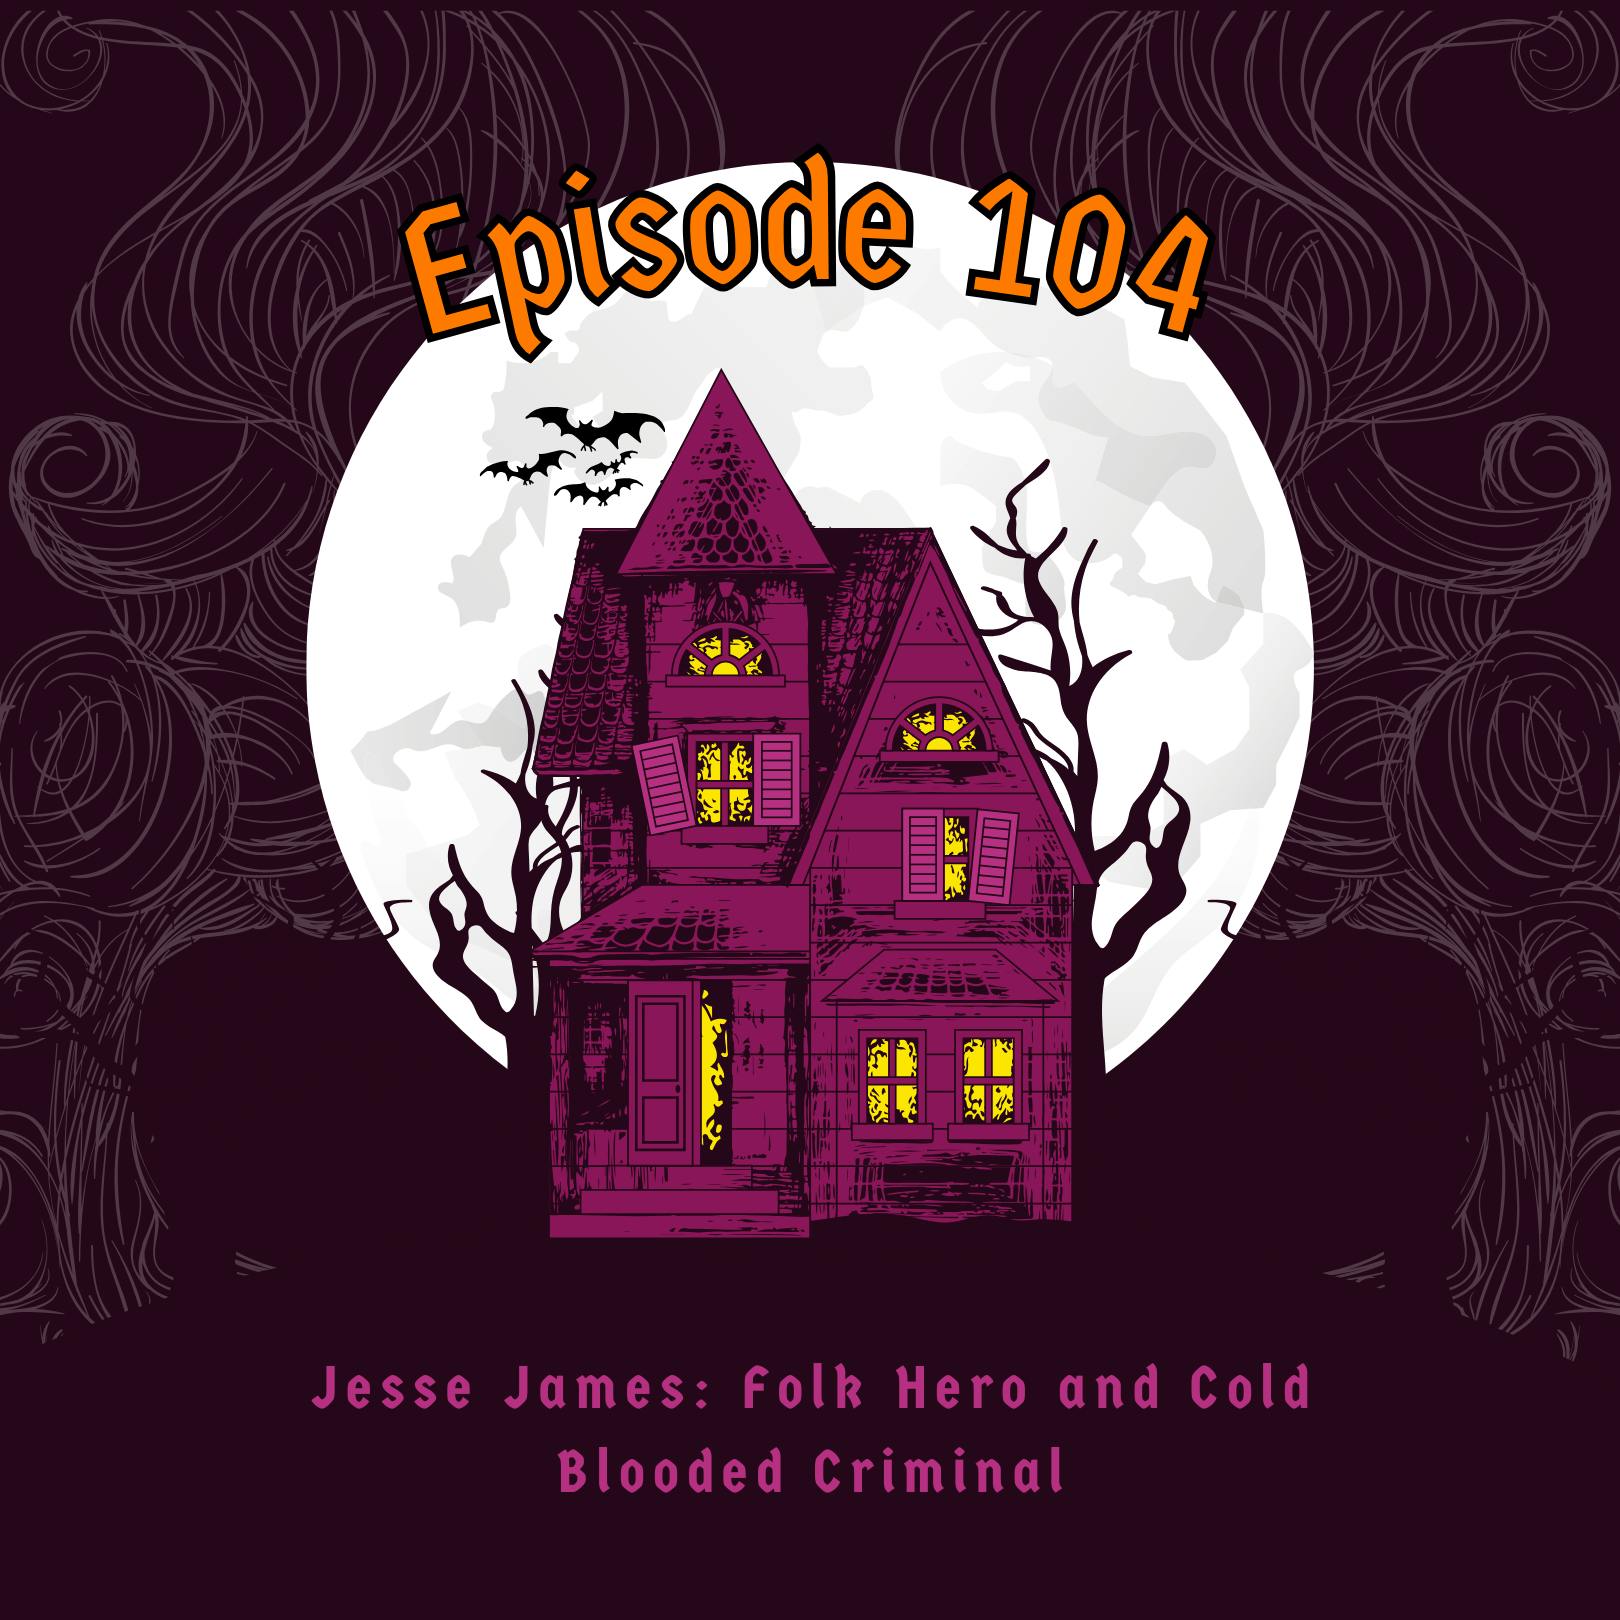 Episode 104: Jesse James: Folk Hero and Cold Blooded Criminal